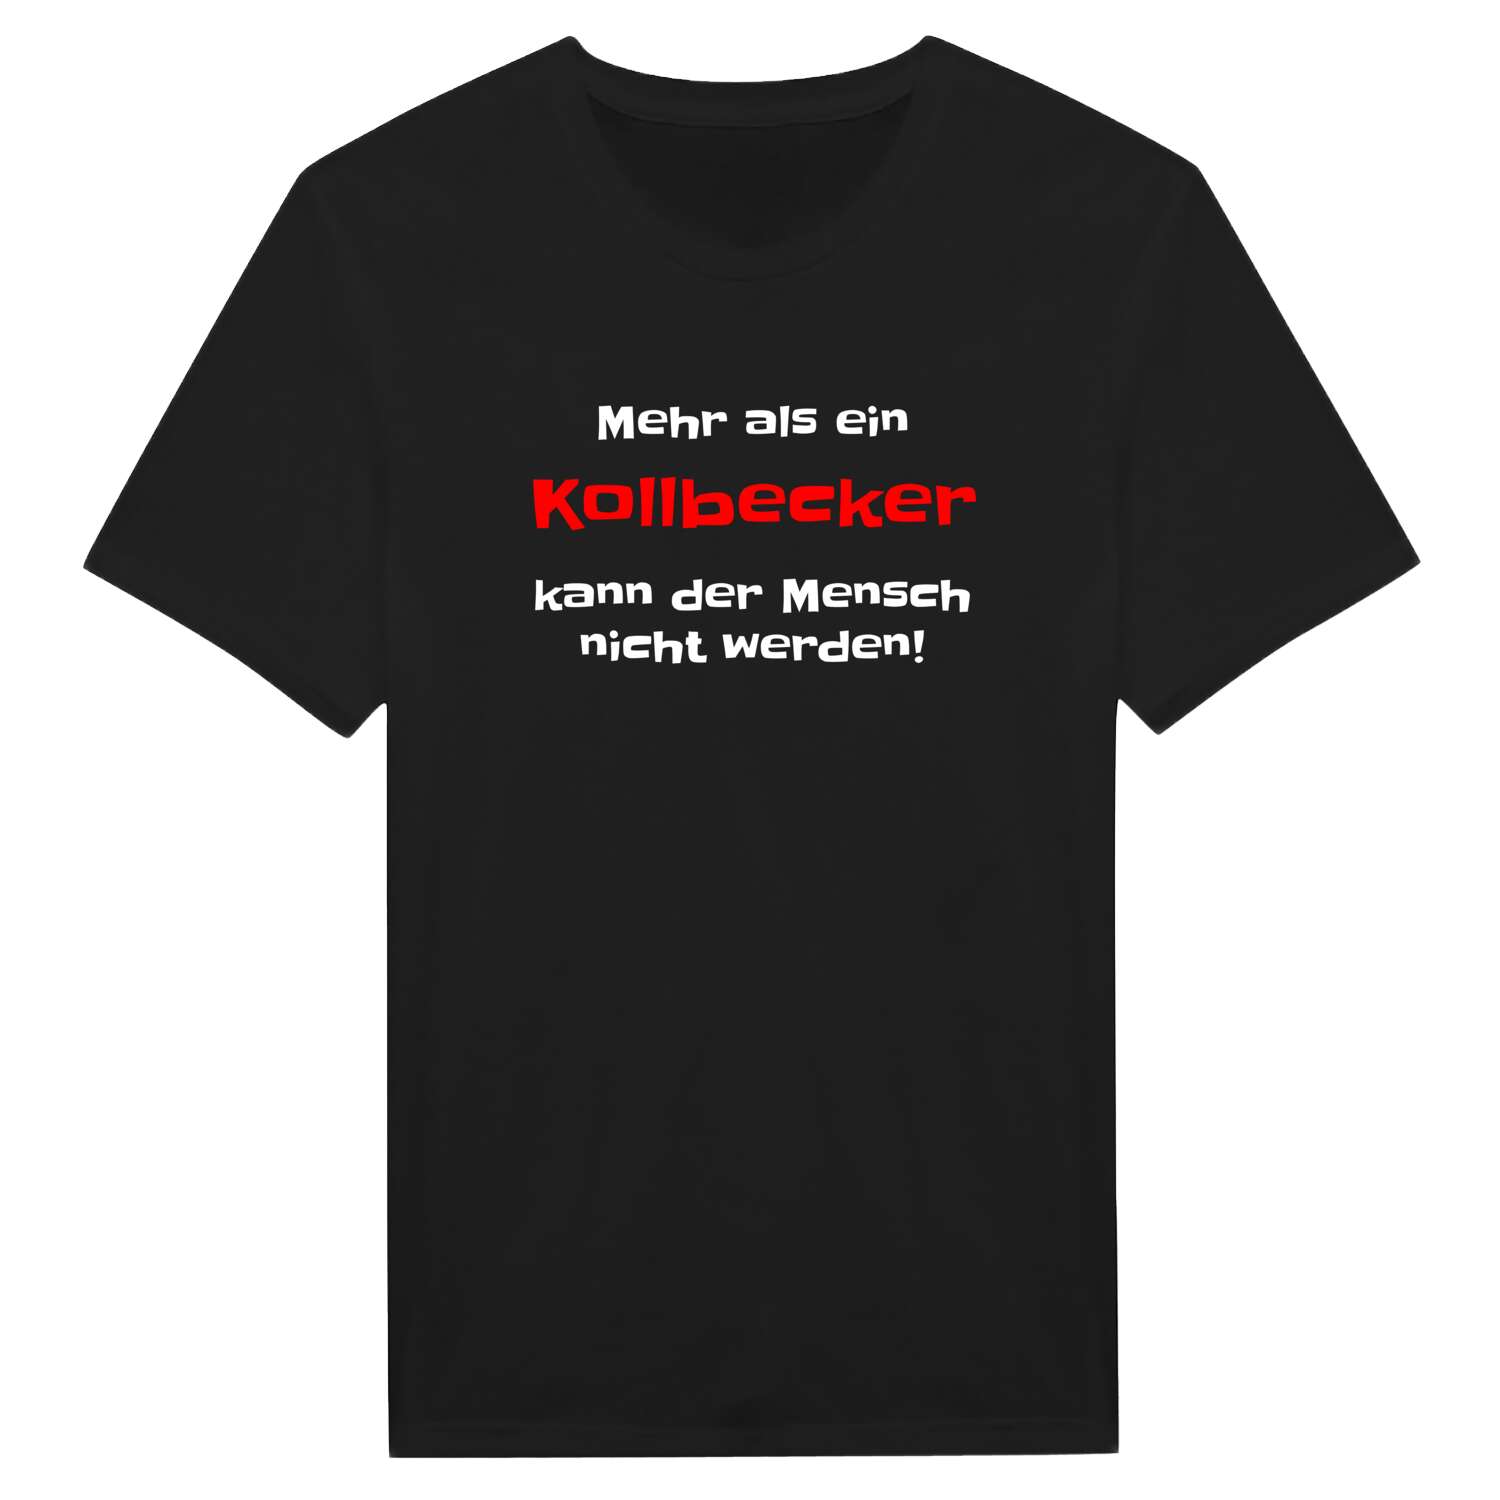 Kollbeck T-Shirt »Mehr als ein«